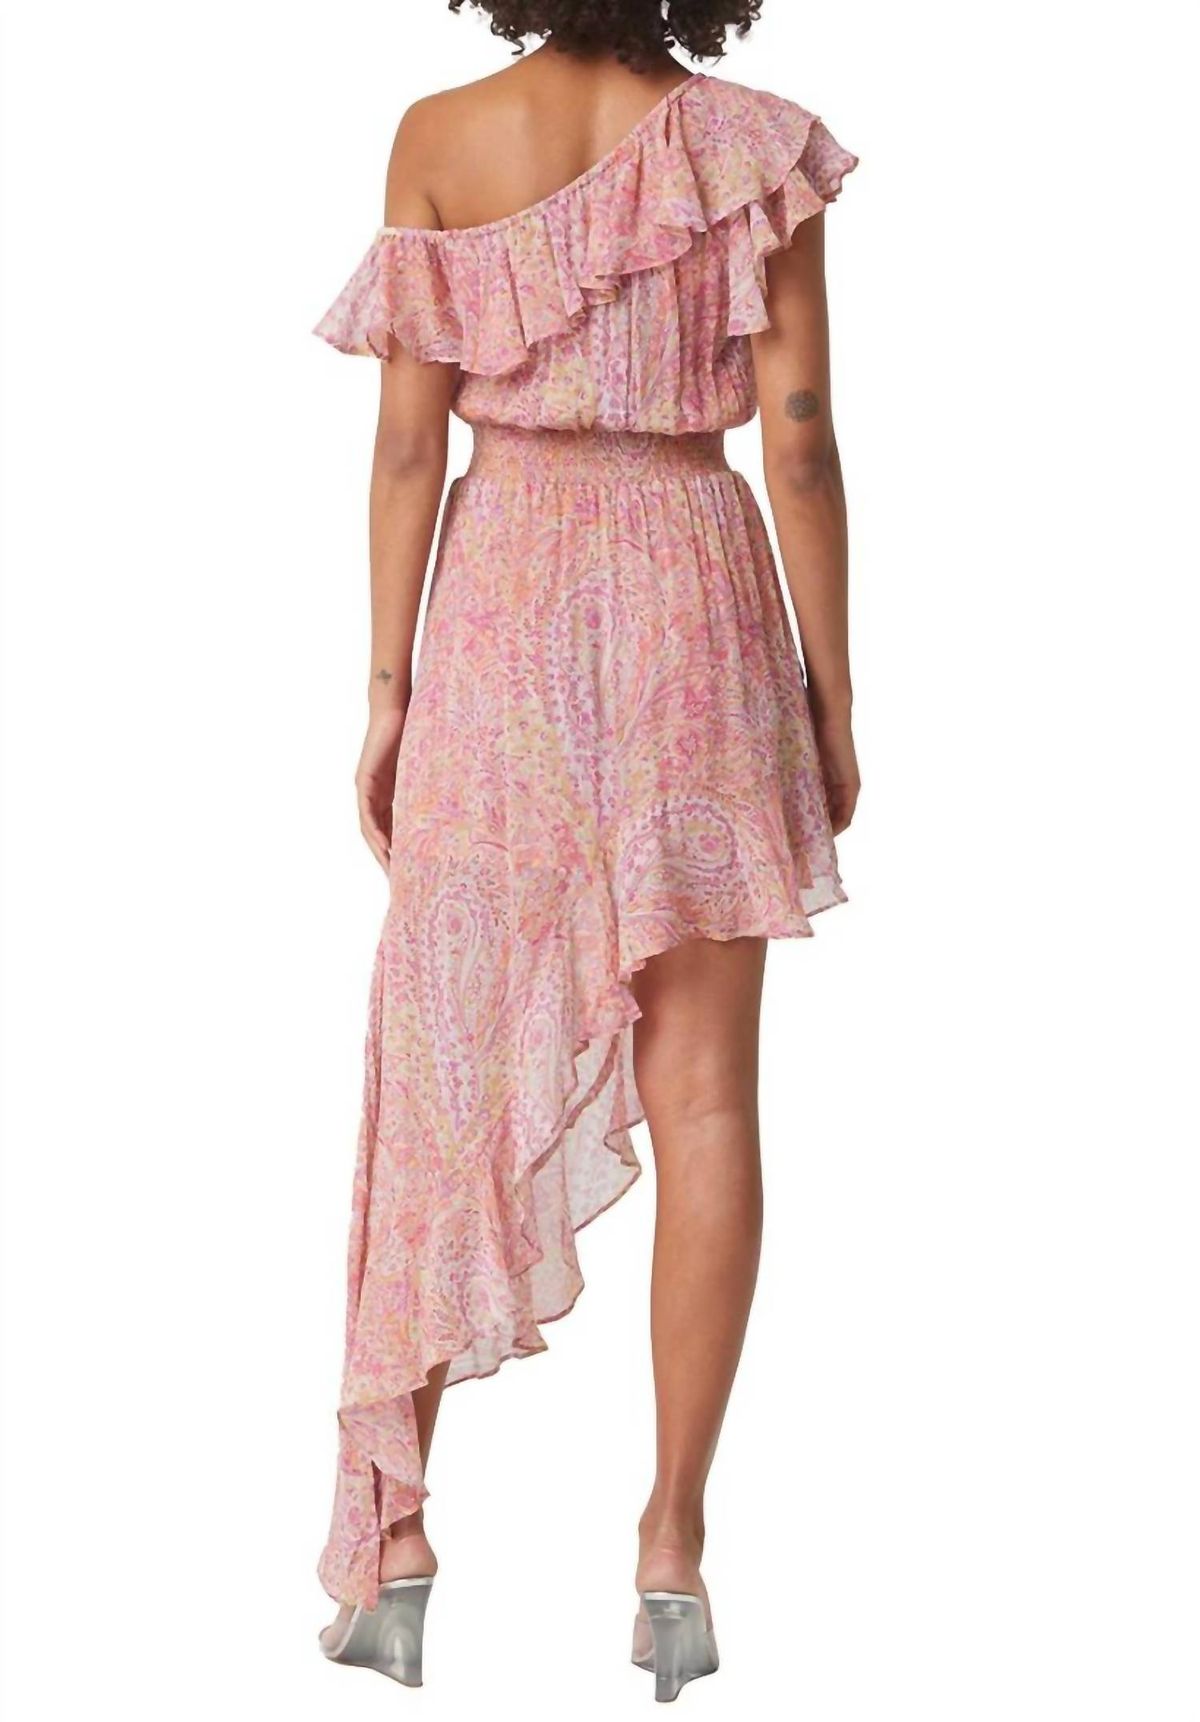 Style 1-1324009572-2696 Misa Los Angeles Size L Off The Shoulder Pink Side Slit Dress on Queenly